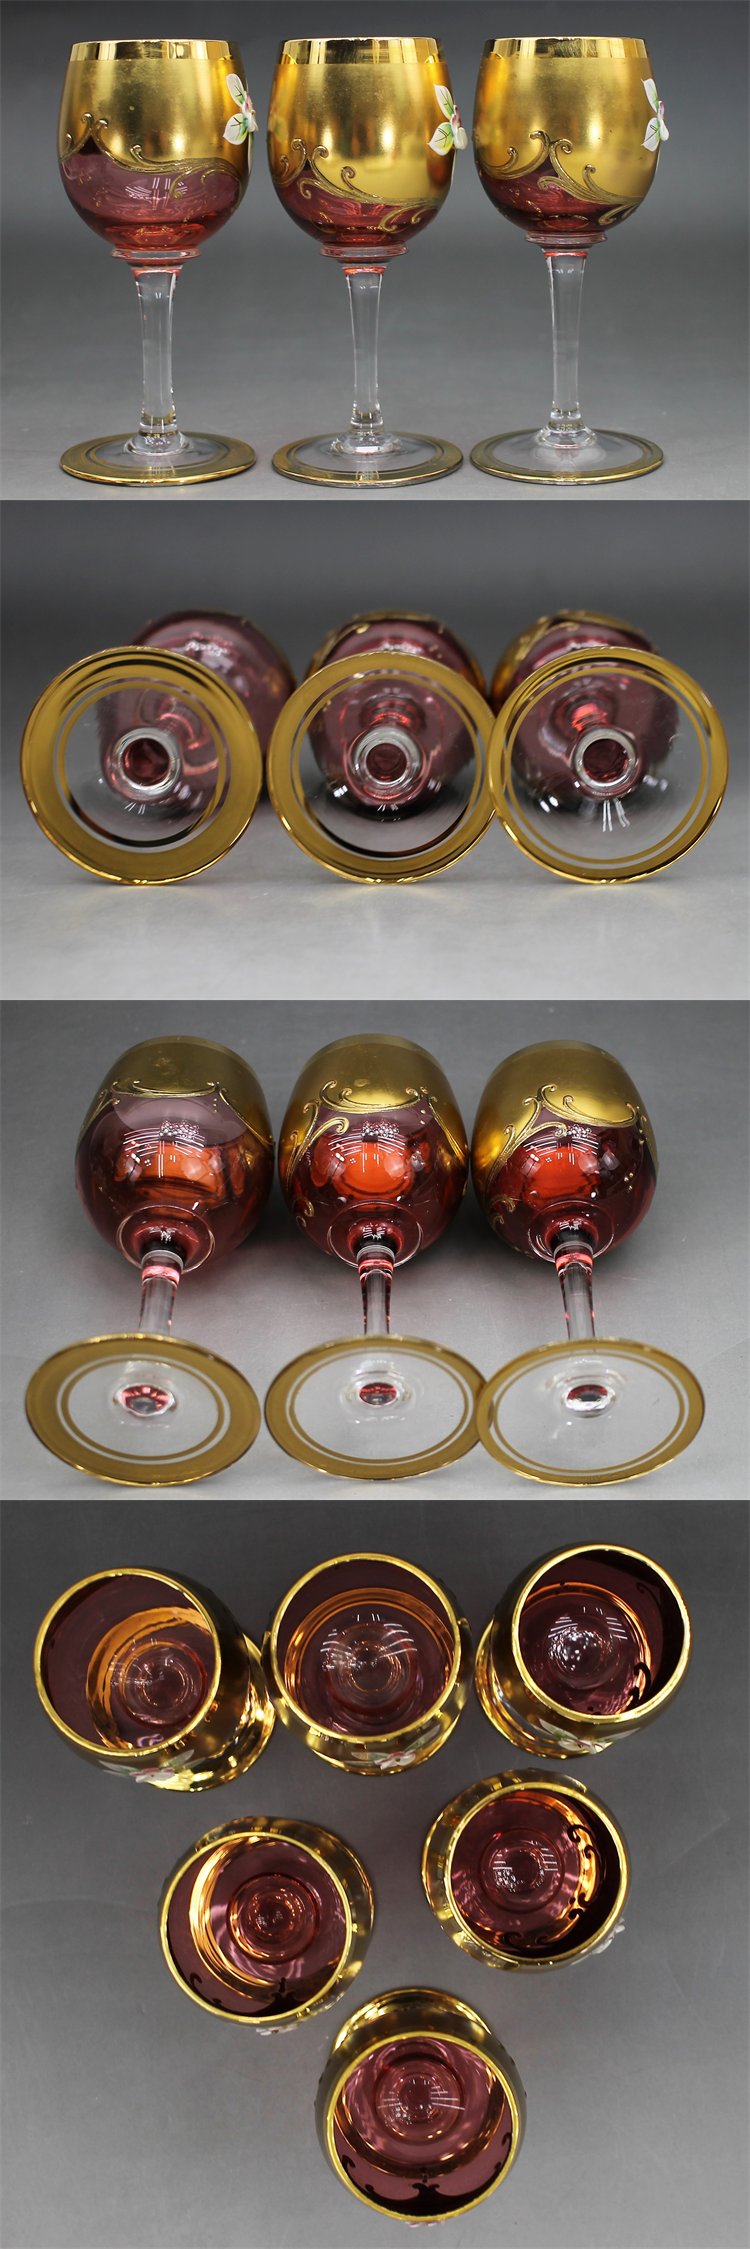 C444 ムラーノグラス ワイングラス 6客 高さ13㎝ ムラーノガラス ムラノグラス ヴェネチアンガラス イタリア ベネチアグラス MURANO GLASS